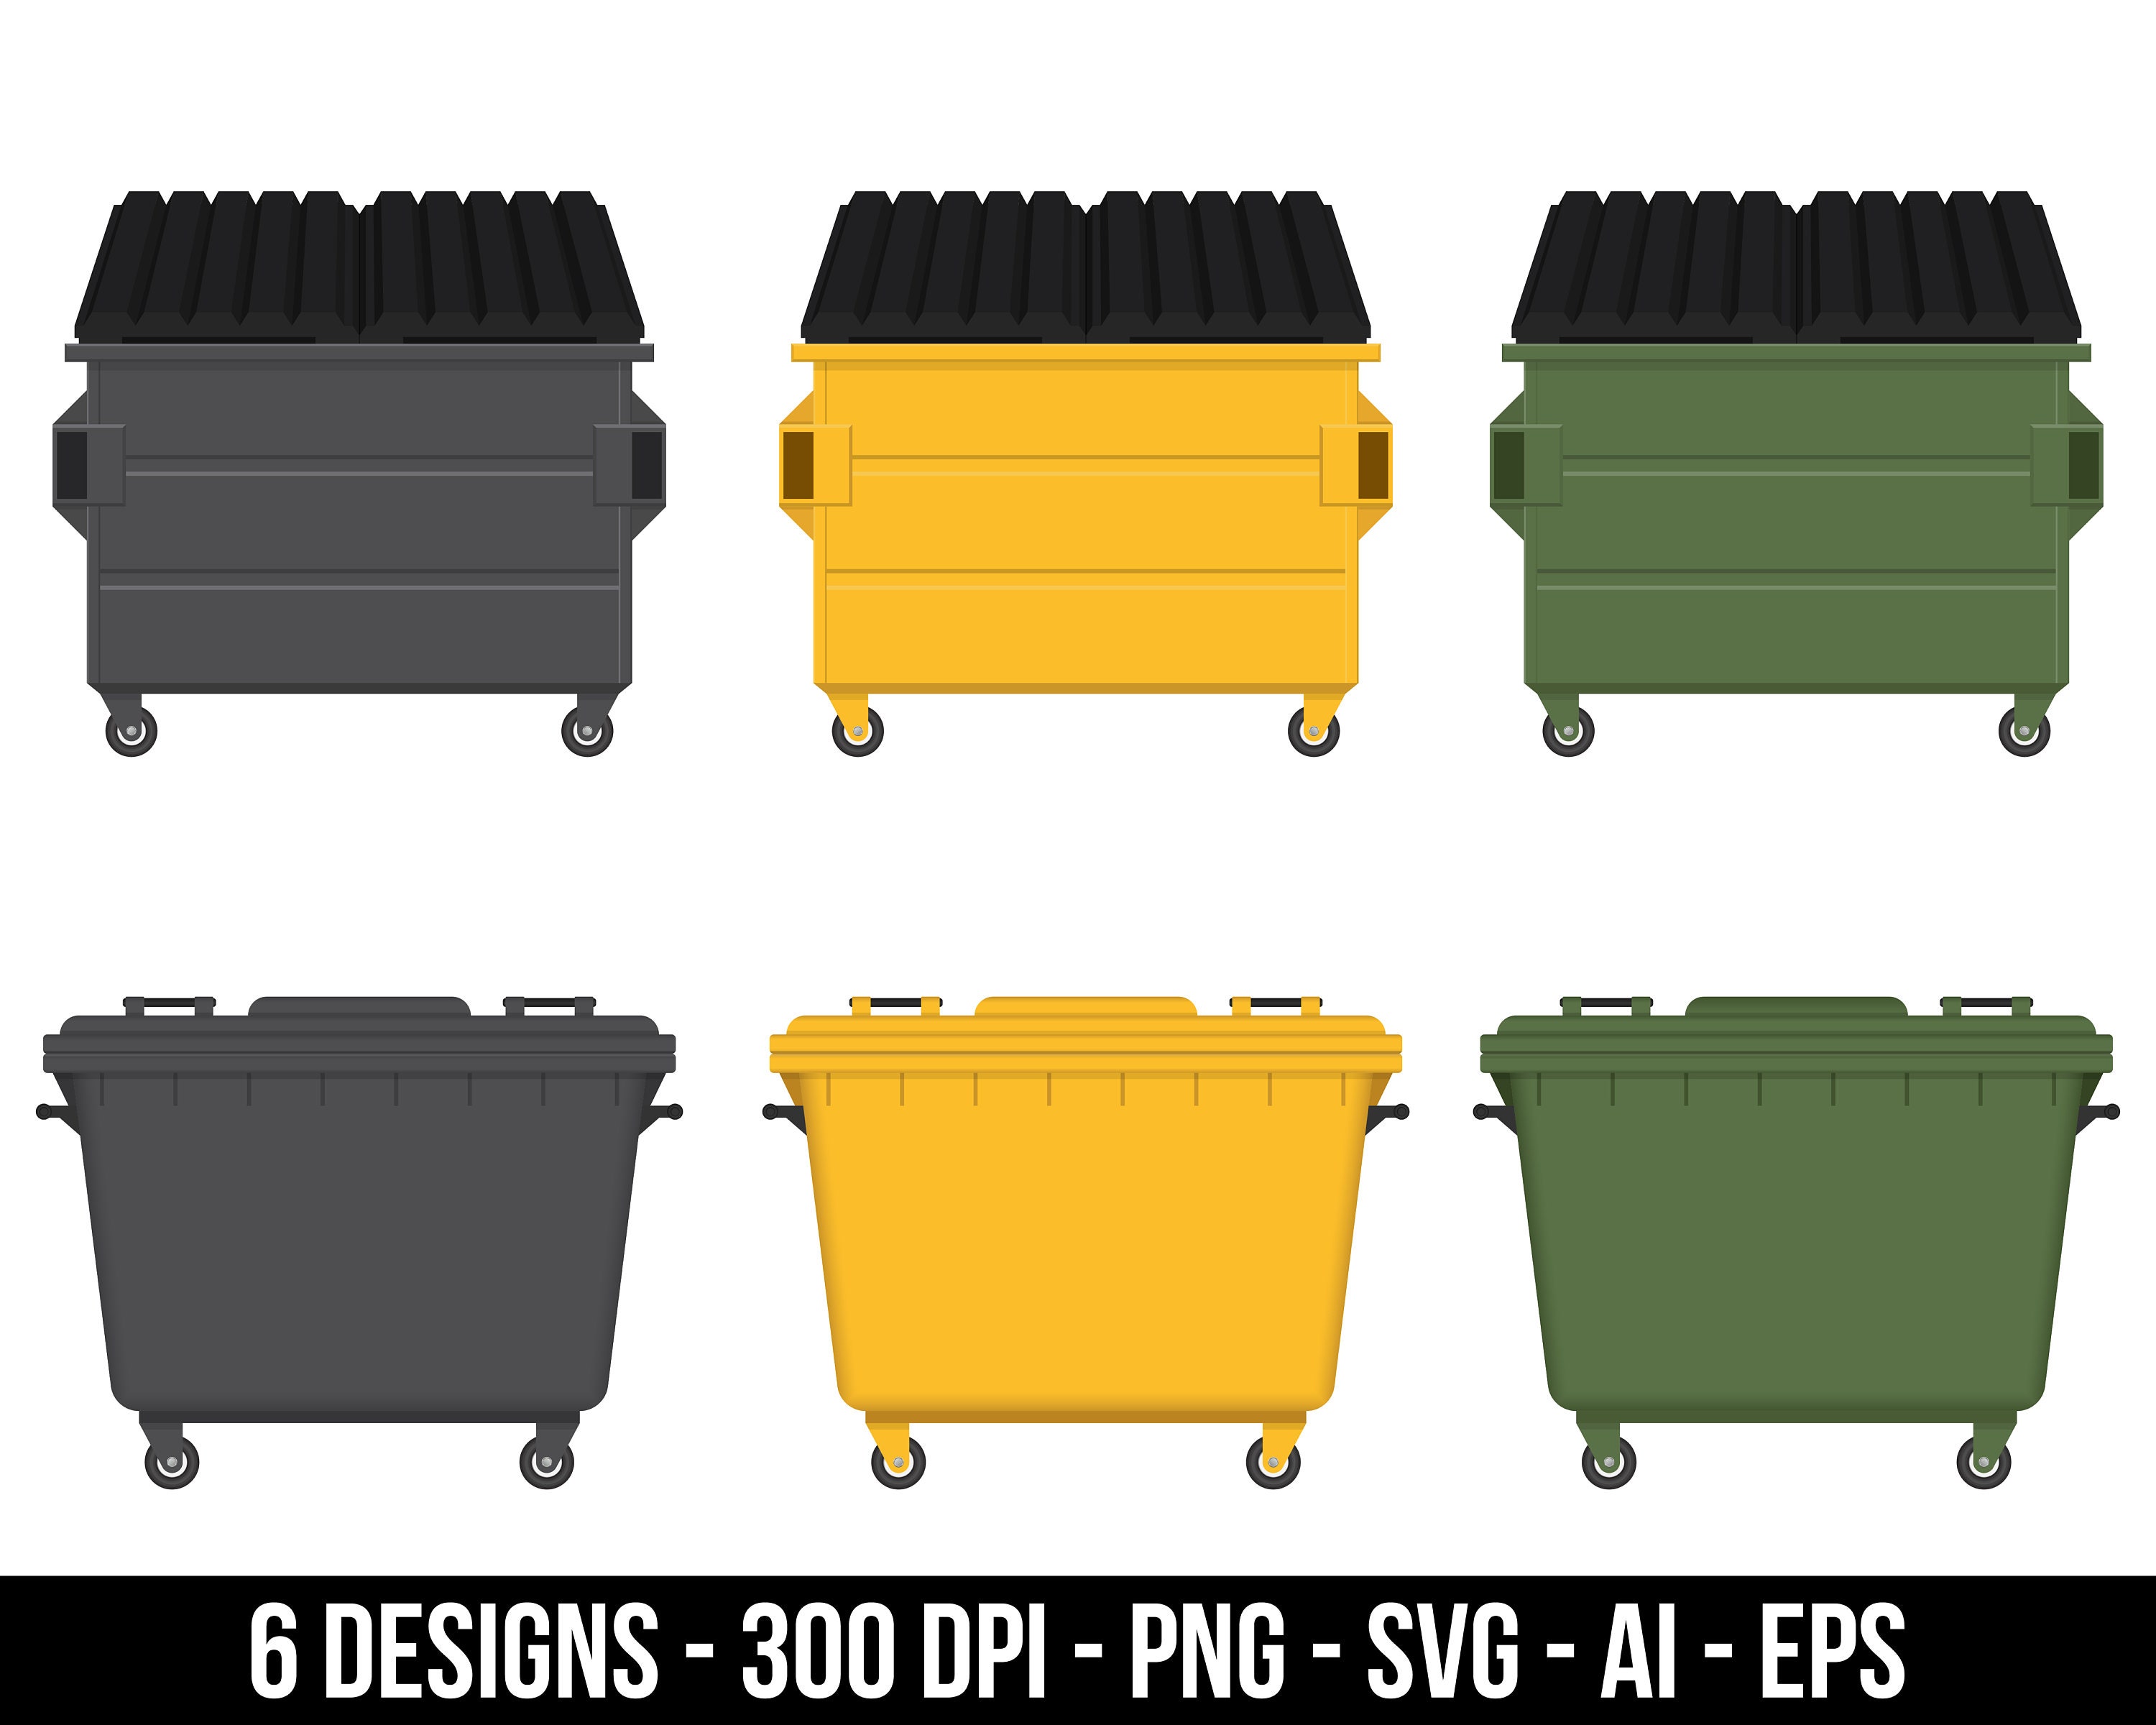 2 pcs Mini Mülleimer, Multifunktions-Auto-Mülleimer mit  Deckel-wasserdichten Müll kann für Zuhause, Büro, Küche, Wohnzimmer  verwendet werden